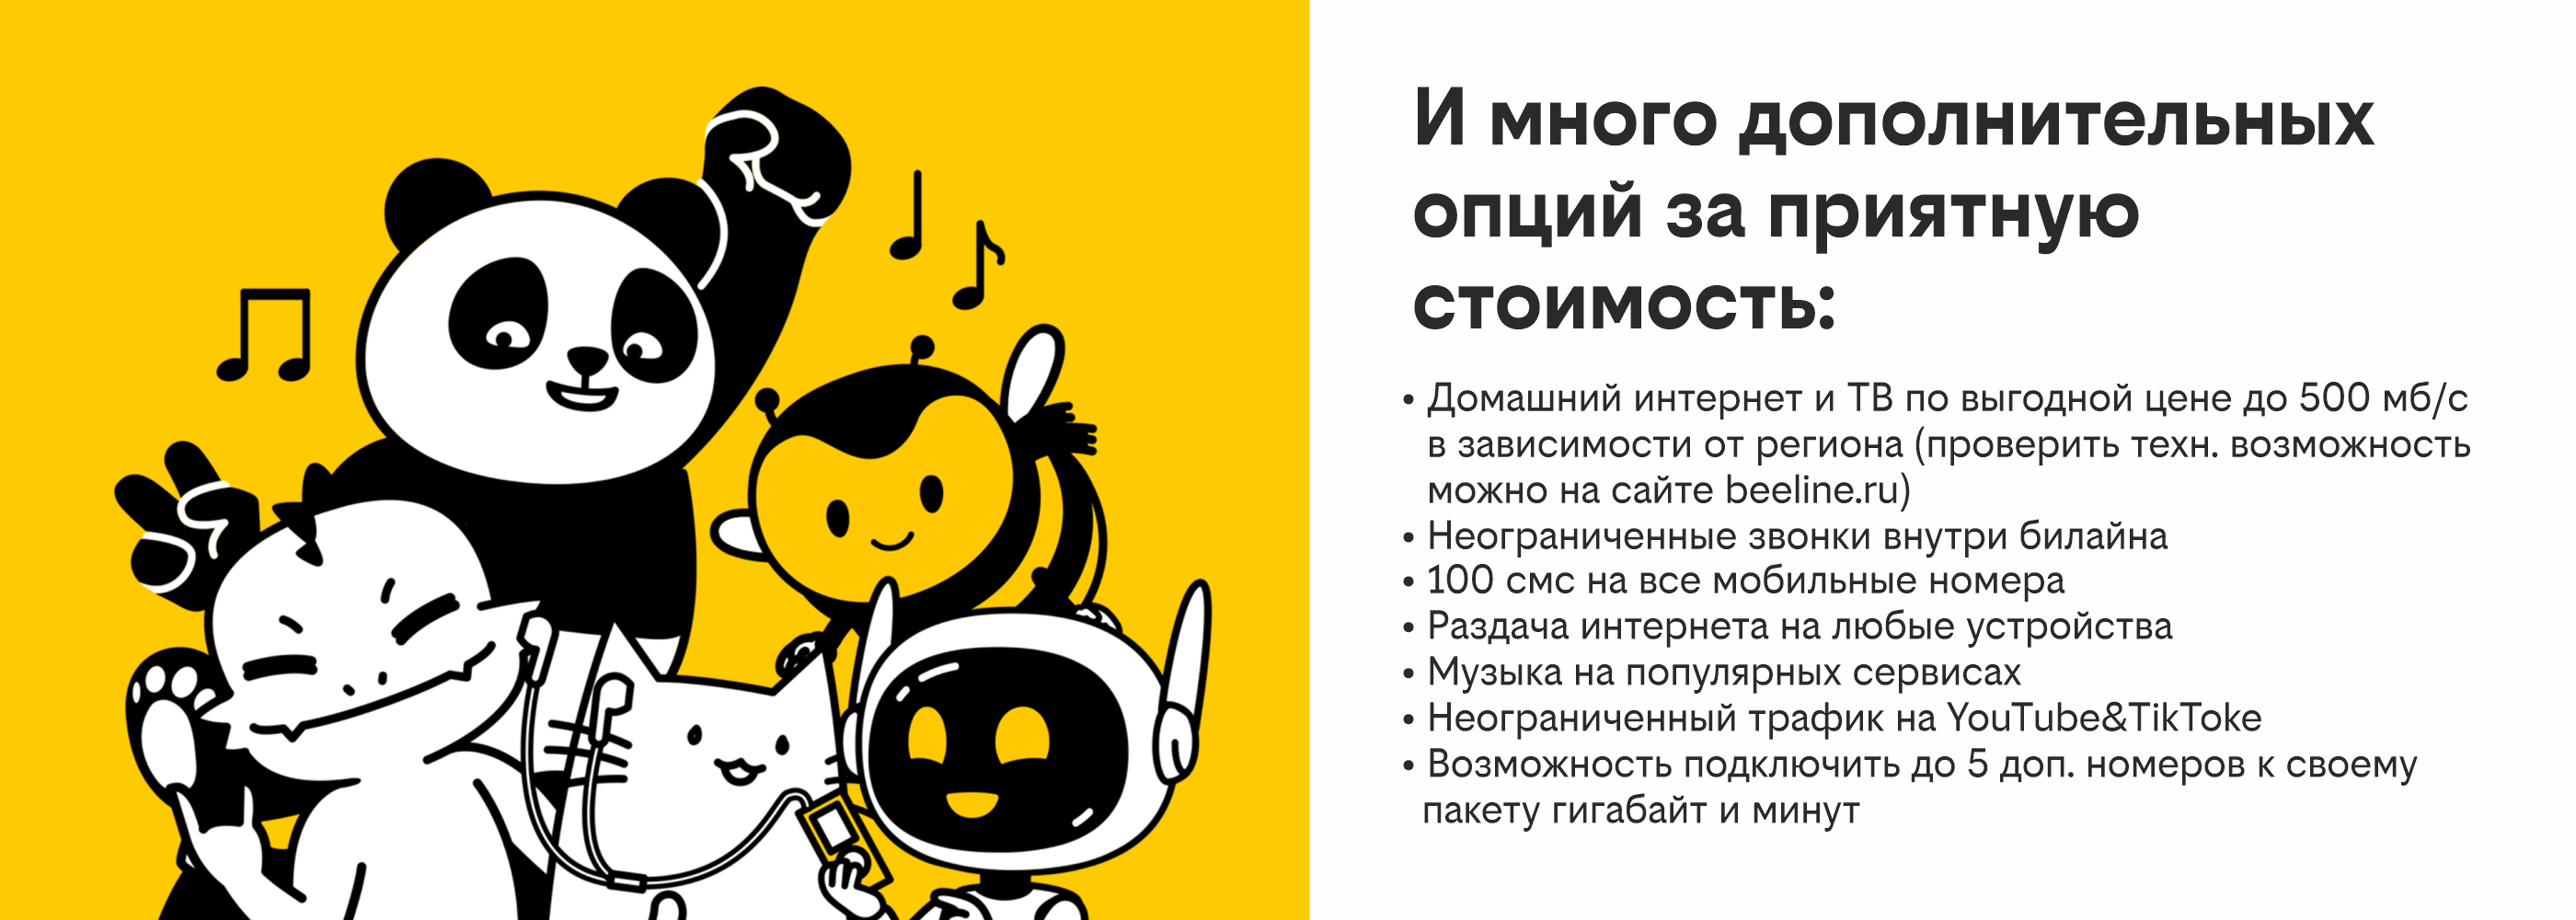 Сим-карта билайн с Тарифом UP - неограниченный трафик в YouTube и TikTok  (Черкесск), купить в Москве, цены в интернет-магазинах на Мегамаркет